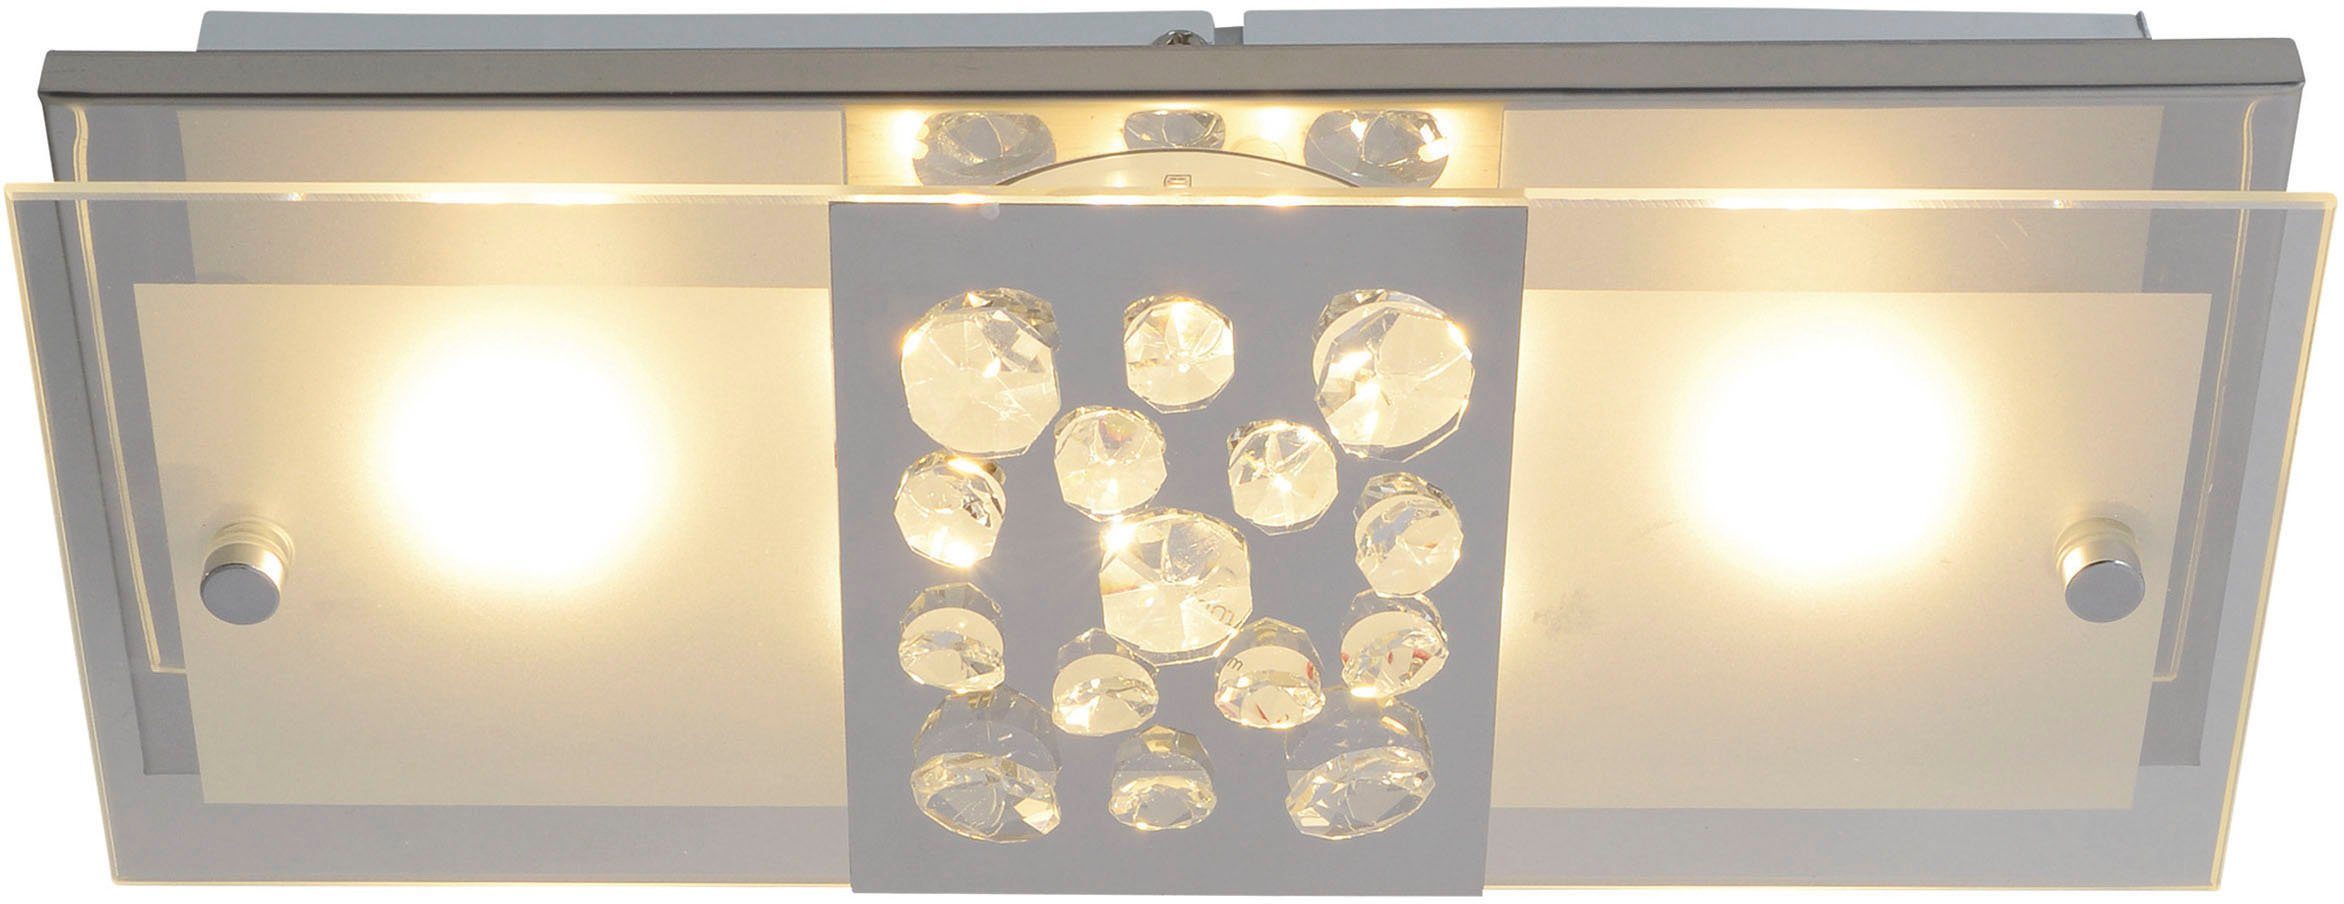 LED fest 11W Chur, Deckenleuchte LED mit chrom näve LED integriert, incl. Kristallen, teilsatiniert Warmweiß, total